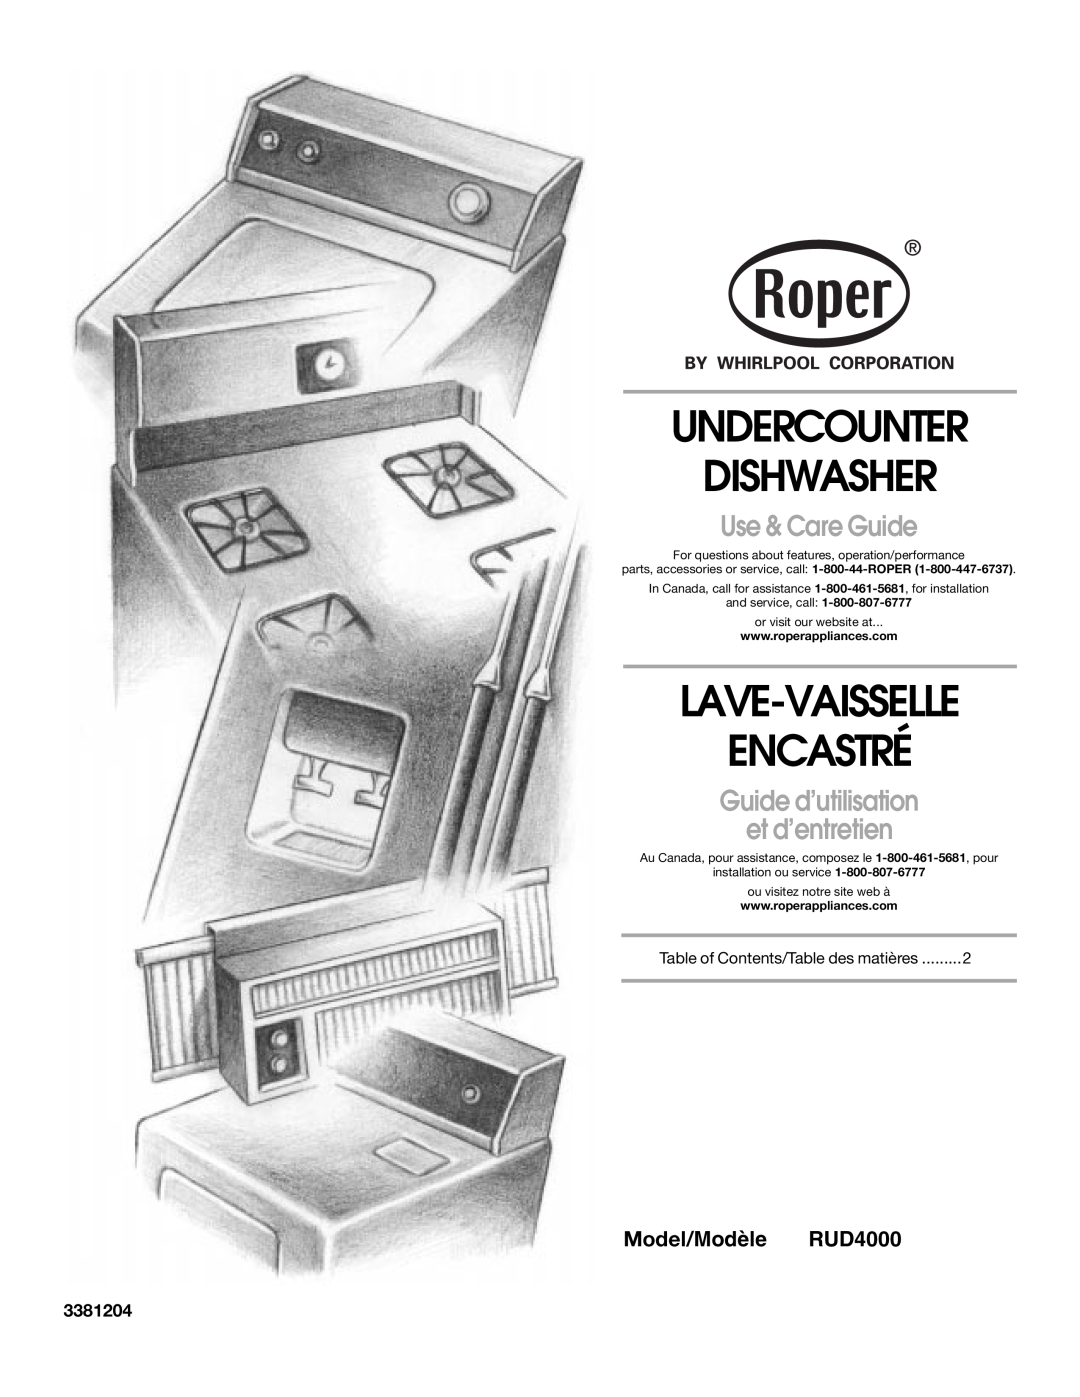 Roper rud4000 manual Undercounter Dishwasher, Lave-Vaisselle Encastré, Use & Care Guide, Model/Modèle RUD4000, 3381204 